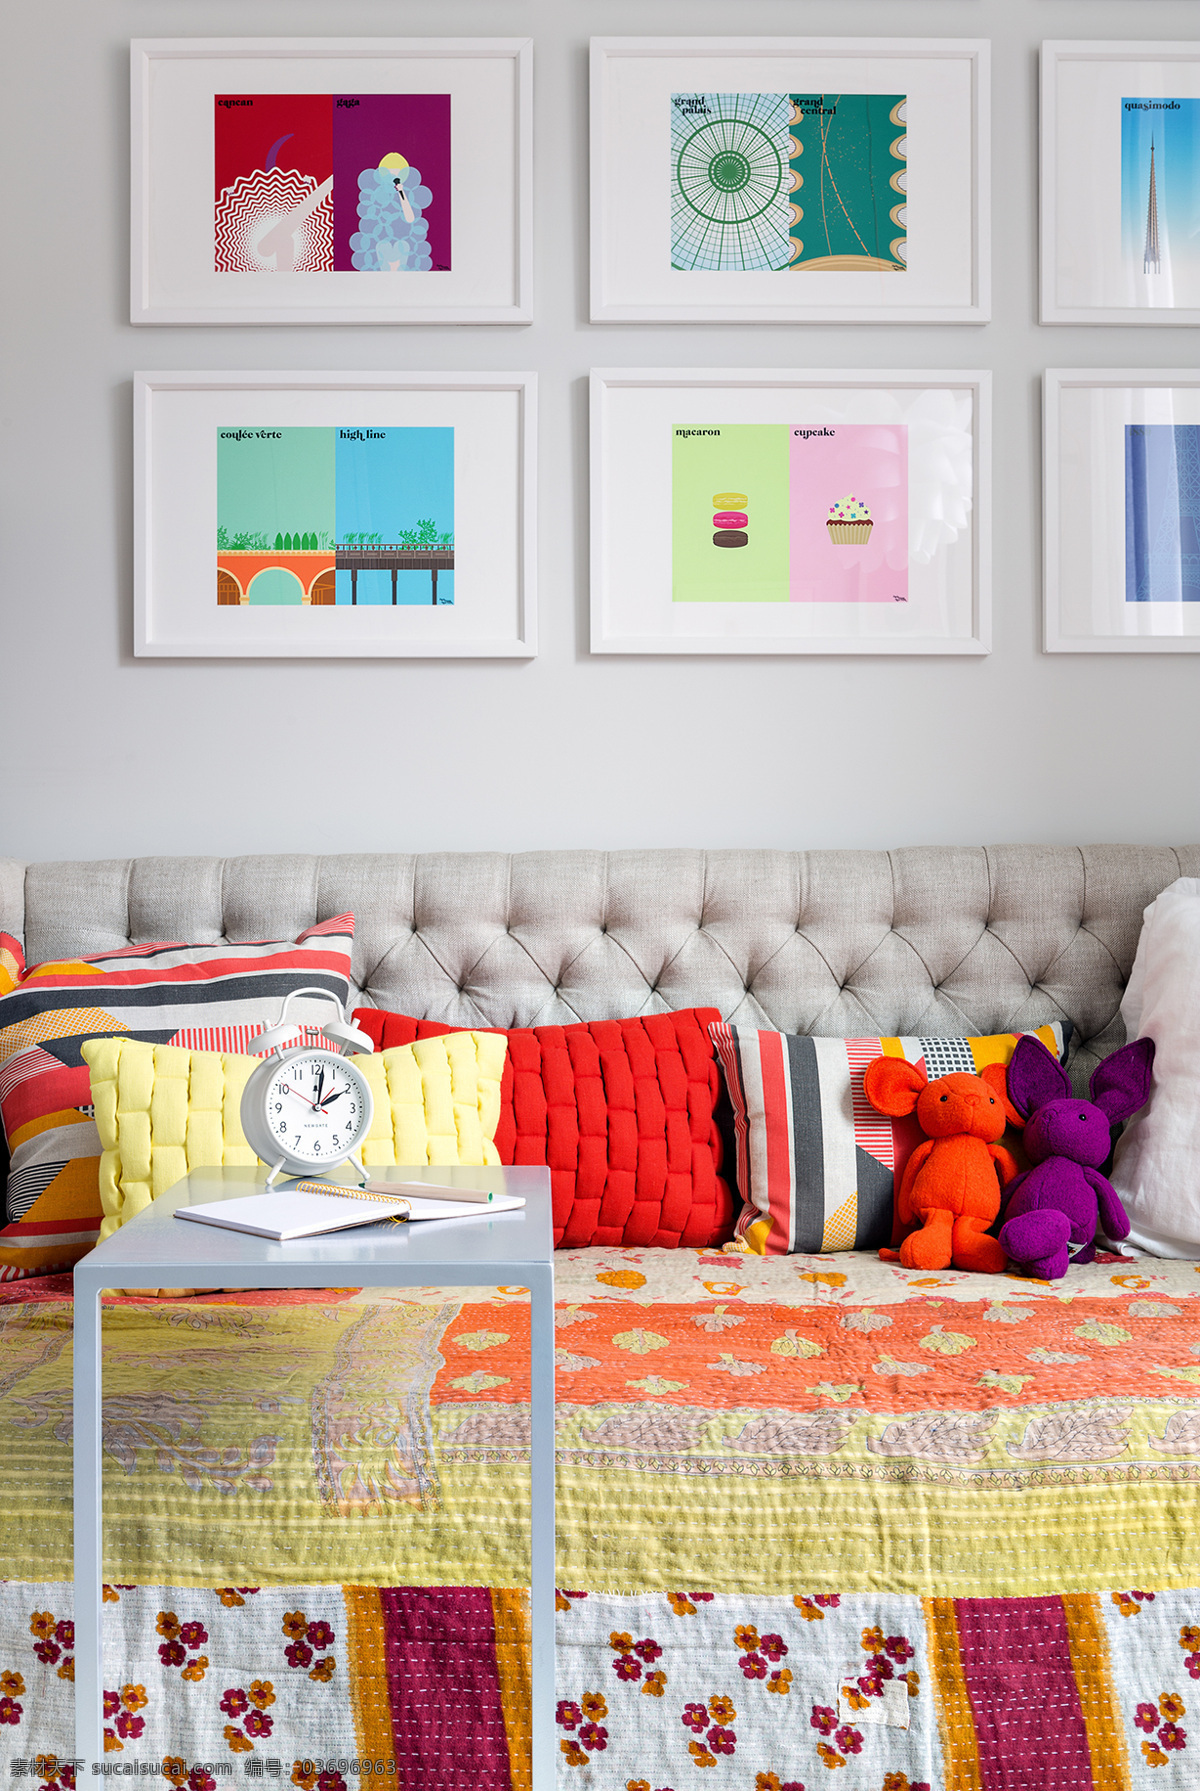 彩色 温馨 舒适 室内设计 效果图 抱枕 客厅 装修 六联挂画 色彩 沙发 玩具 五颜六色 印花 钟表